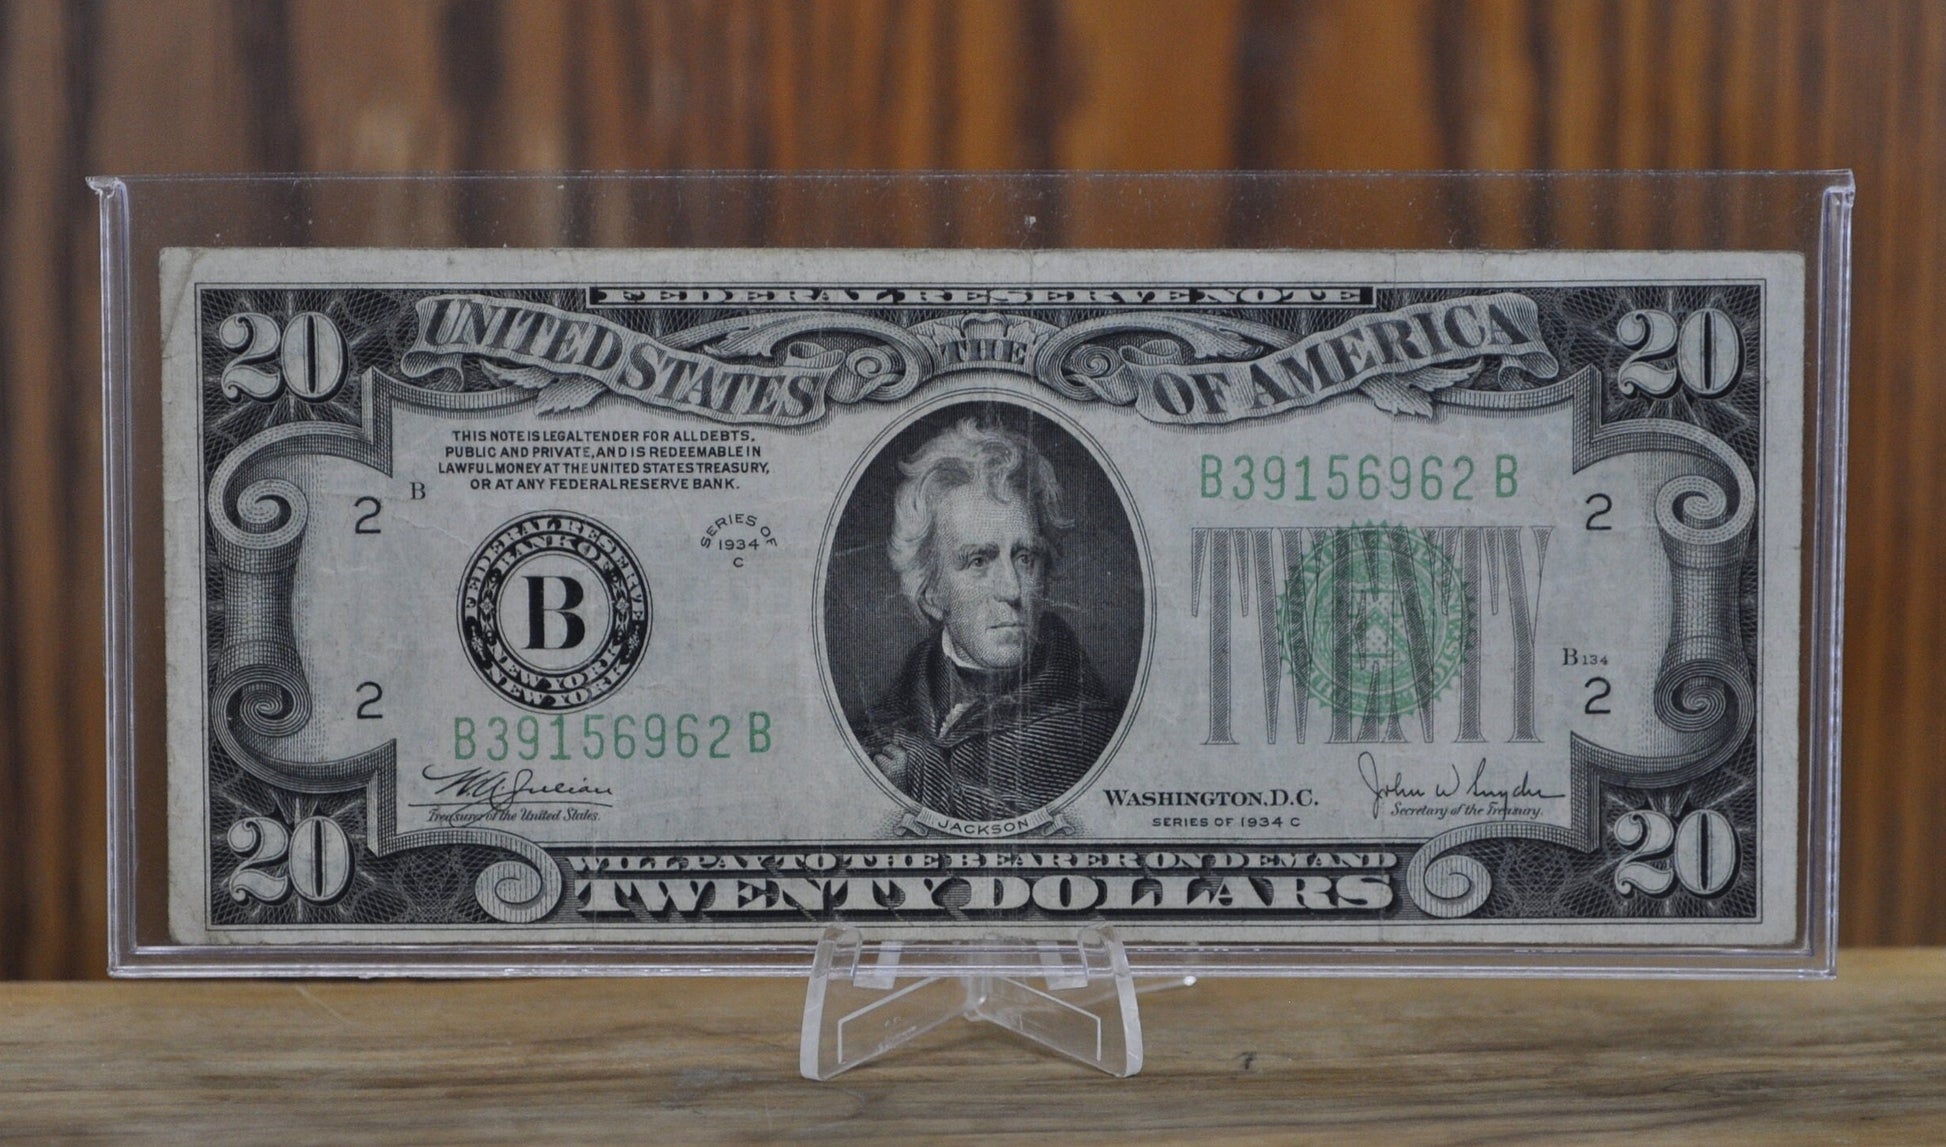 1934 20 Dollar Bill - Choose by Grade - Random Series 1934 Twenty Dollar Federal Reserve Note - Fr#2054 - Fr#2058